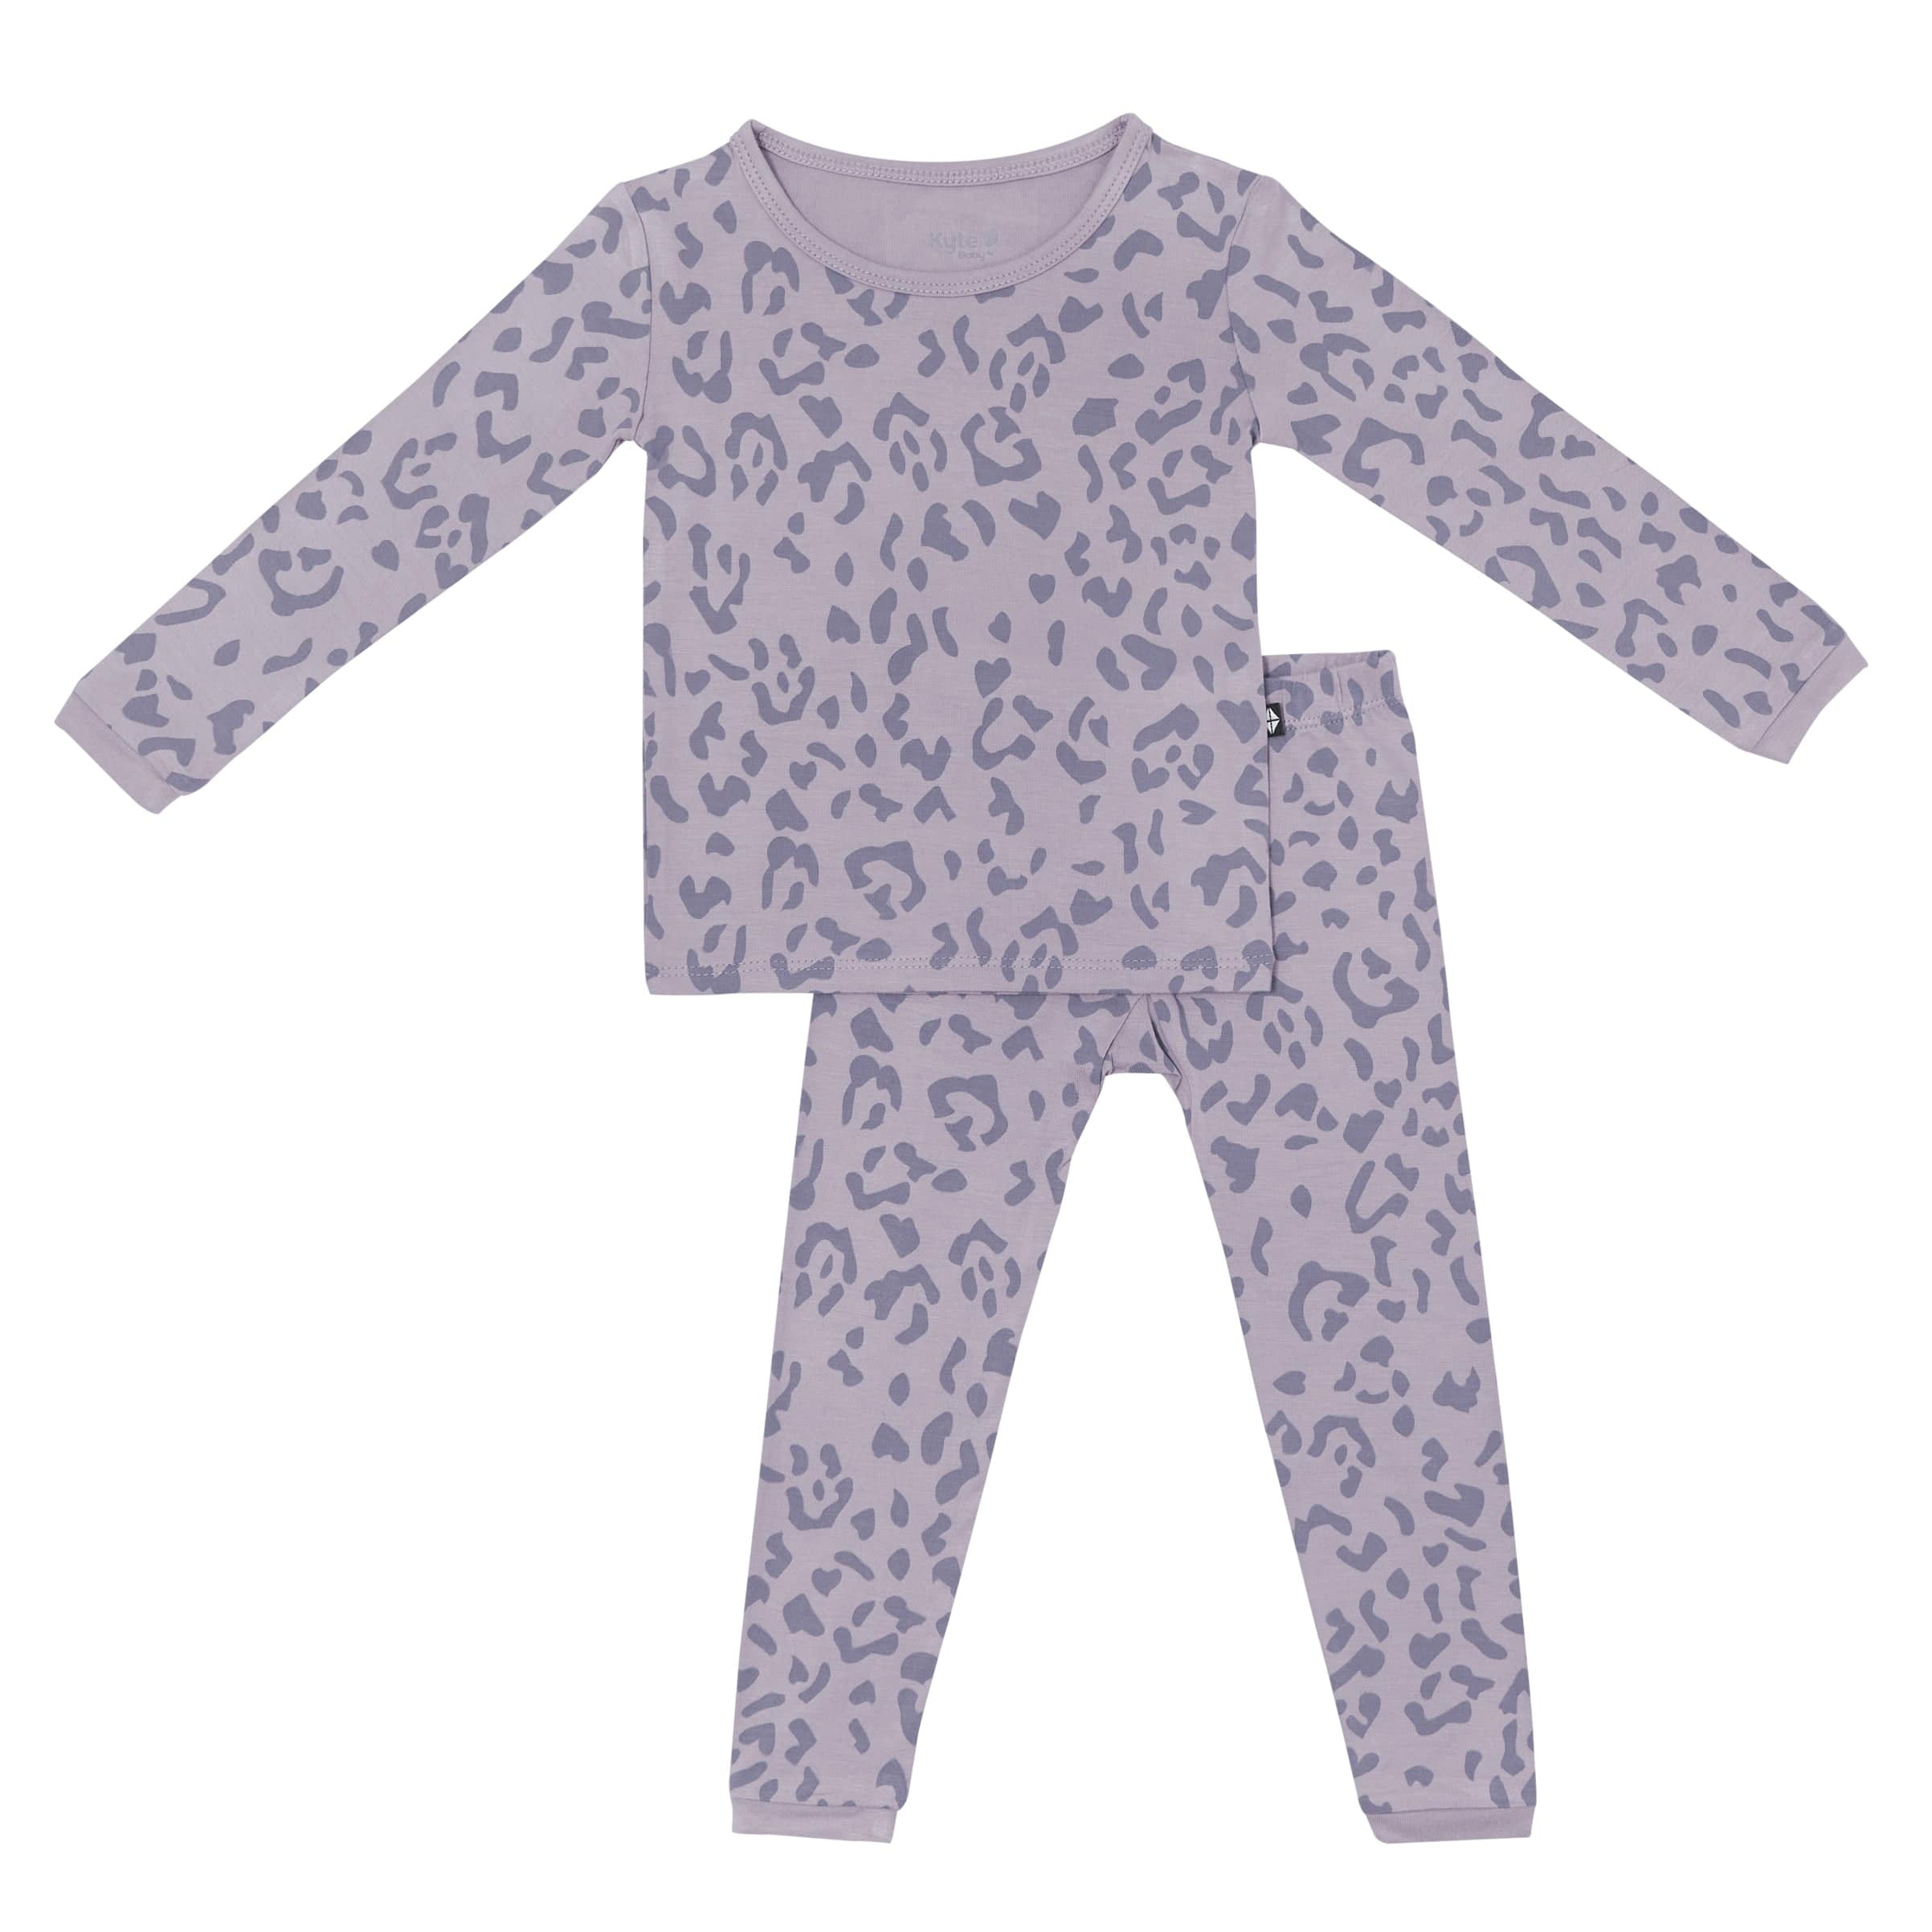 BINIDUCKLING Toddler Button Up Pajamas Summer Pjs for Girls